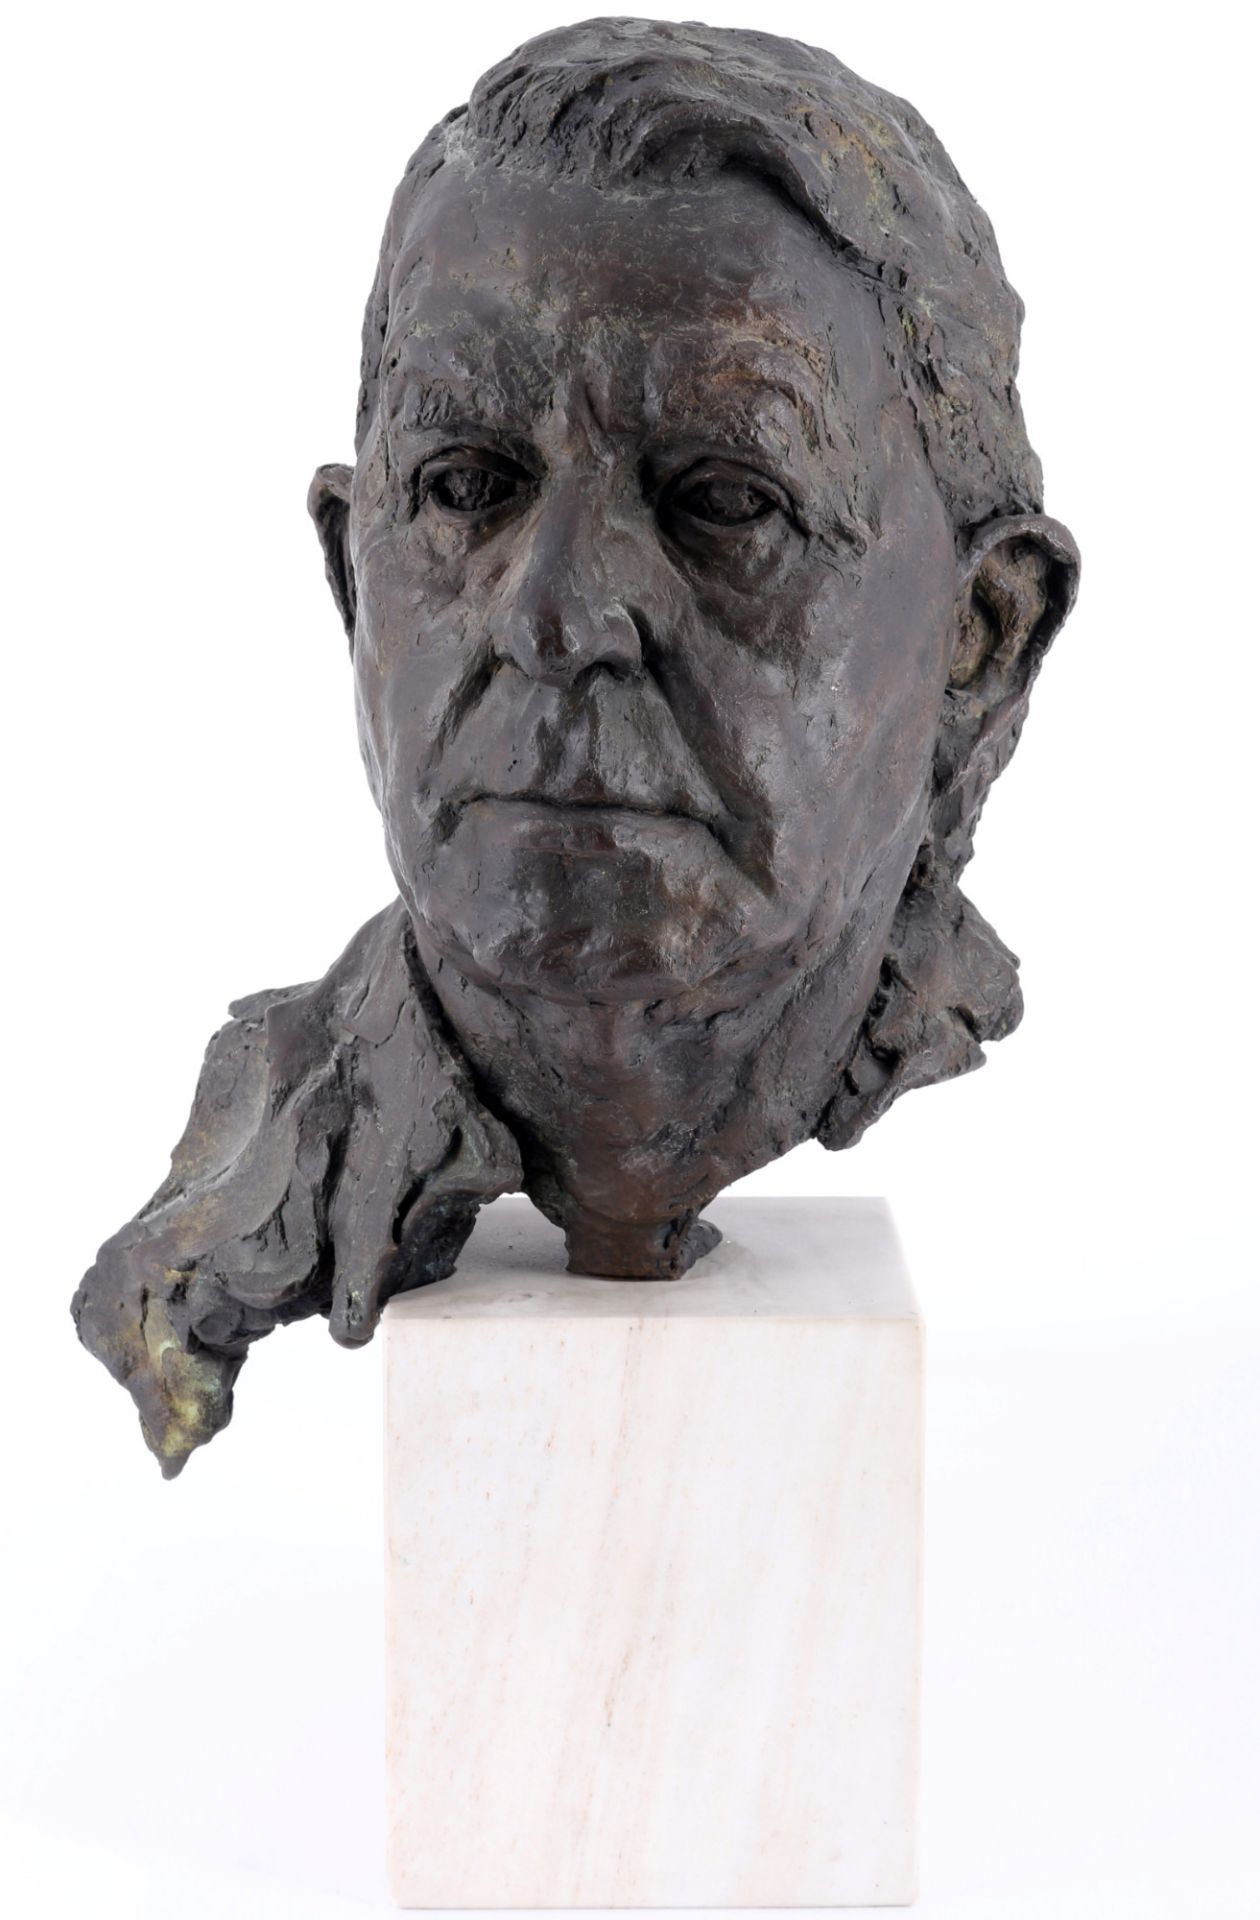 Unbekannter Bildhauer, Bronze Büste vom H. Rösch, unknown sculptor bronze bust,